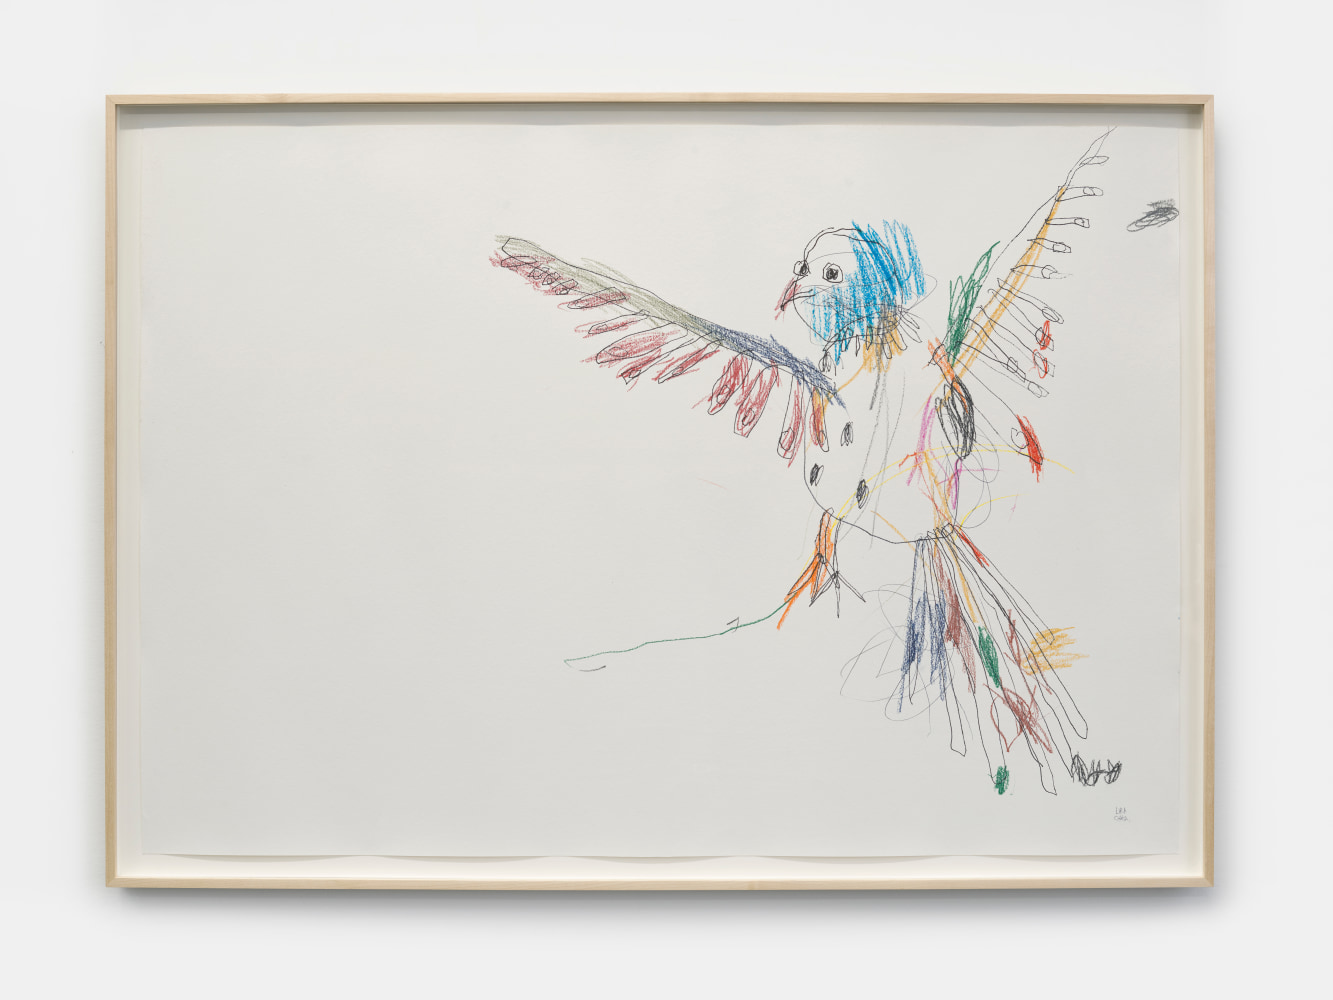 Lera Derkach
Lanner falcon, 2022
Mixed media on paper
27.50h x 39.50w in
69.85h x 100.33w cm